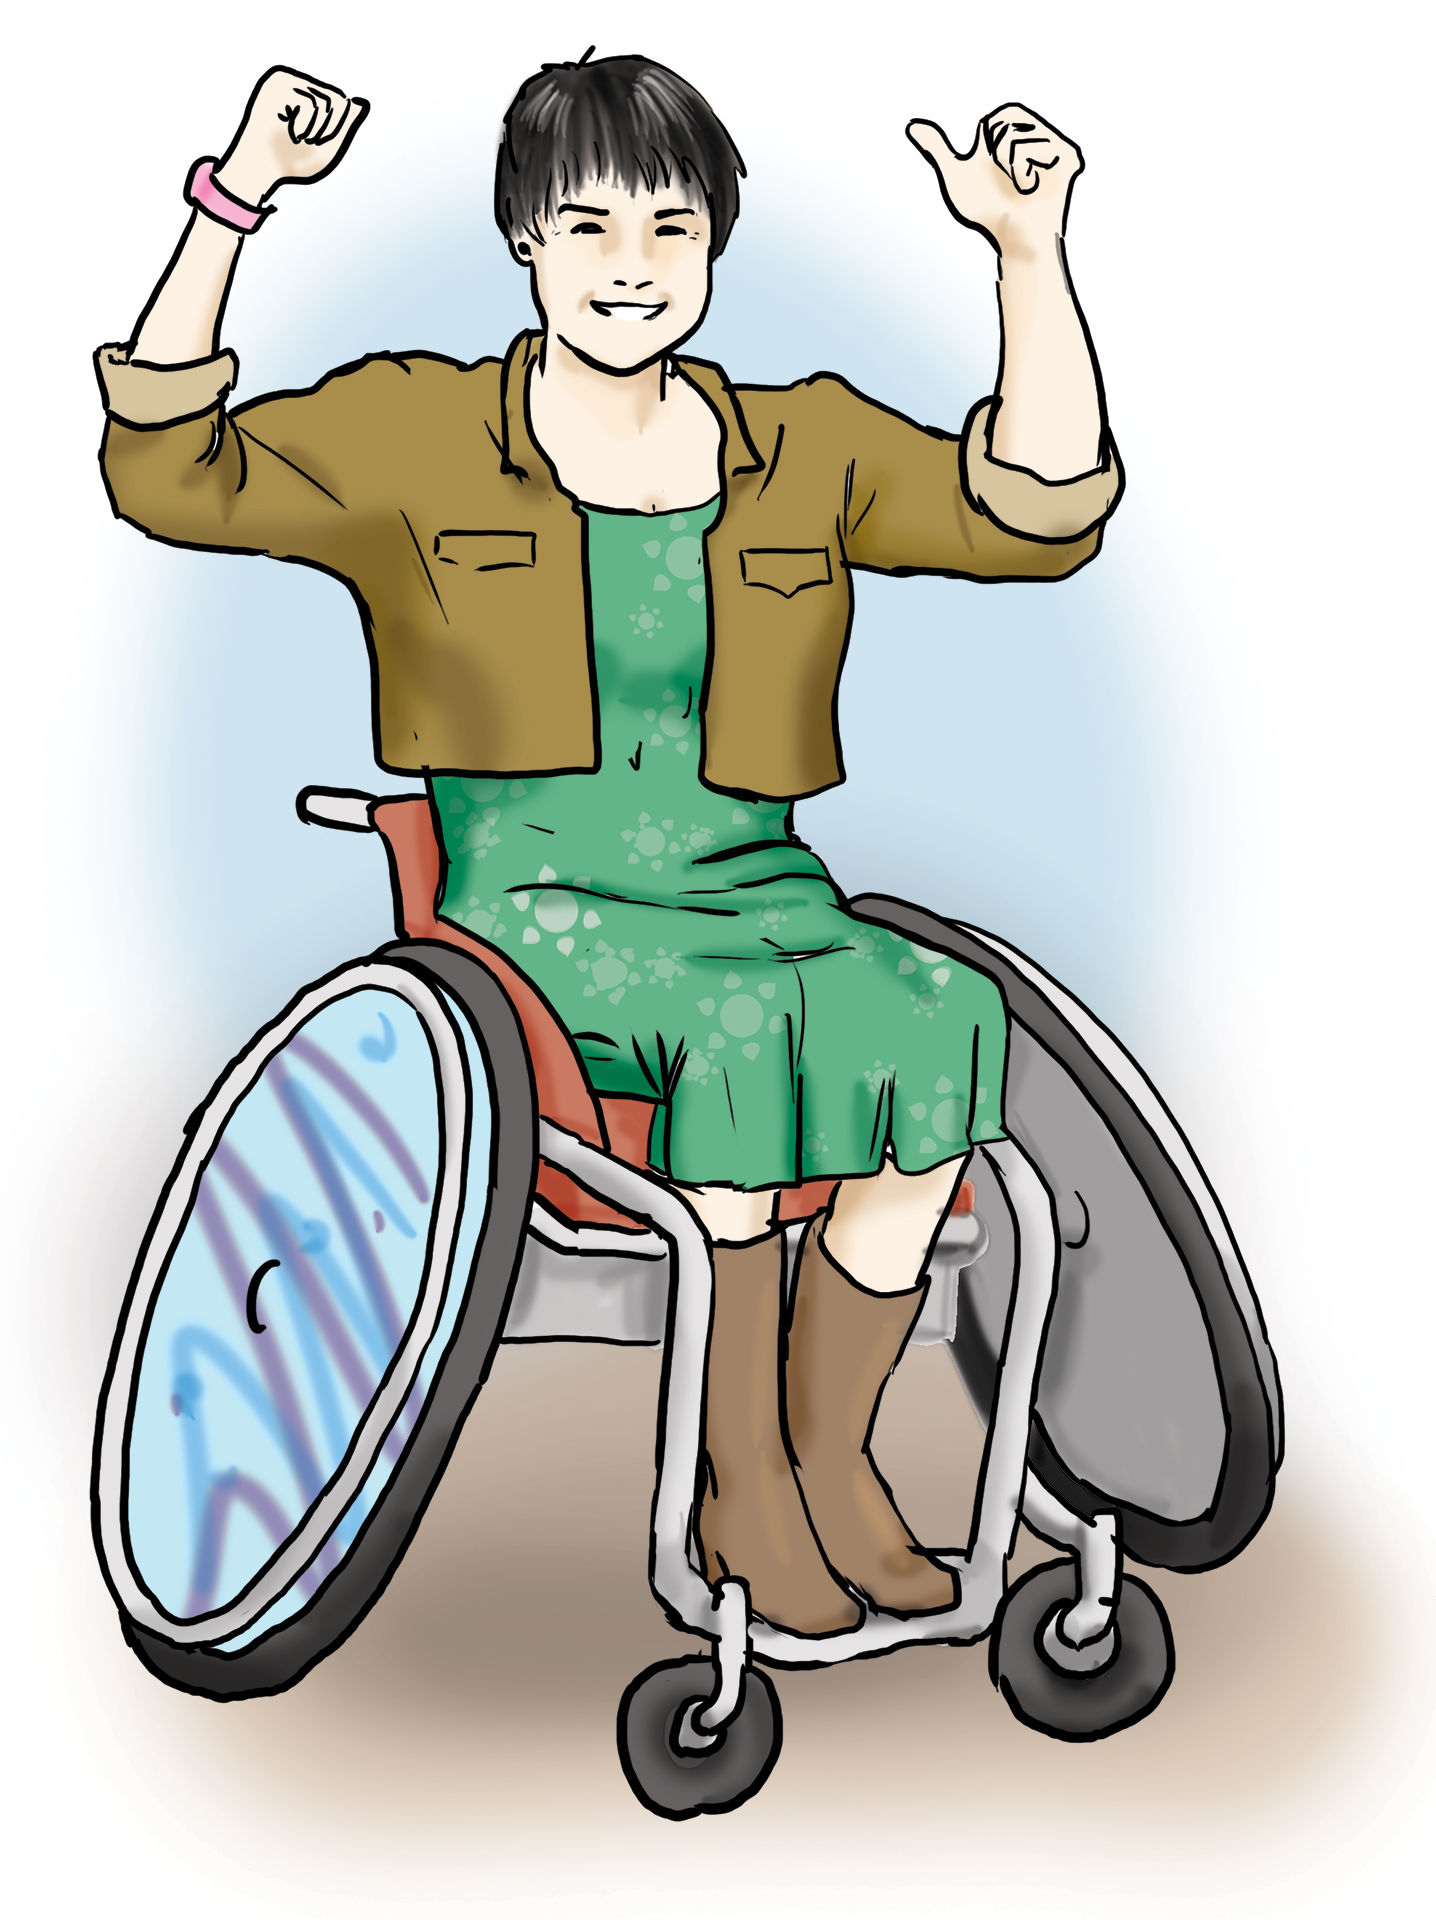 Eine Frau im Rollstuhl reckt selbstbewusst beide Arme nach oben.